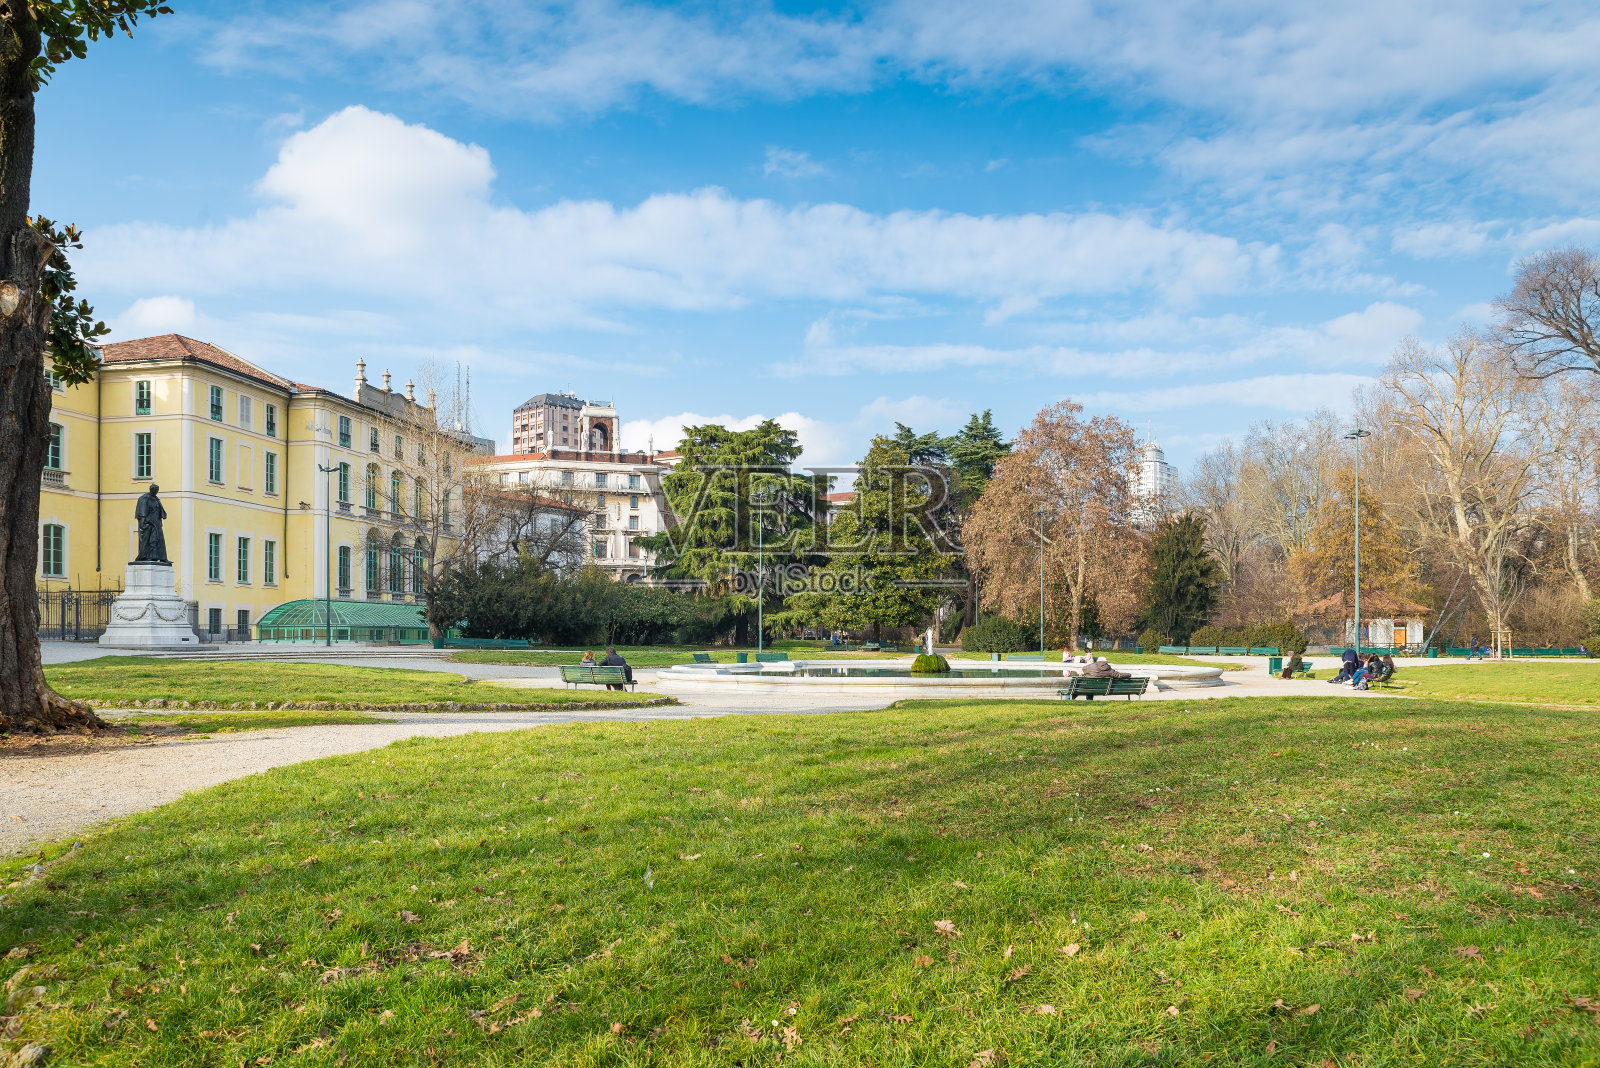 米兰,意大利。米兰市的Indro Montanelli公共花园(或威尼斯门的花园或通过Palestro)。大型城市公园和Dugnani喷泉景观照片摄影图片